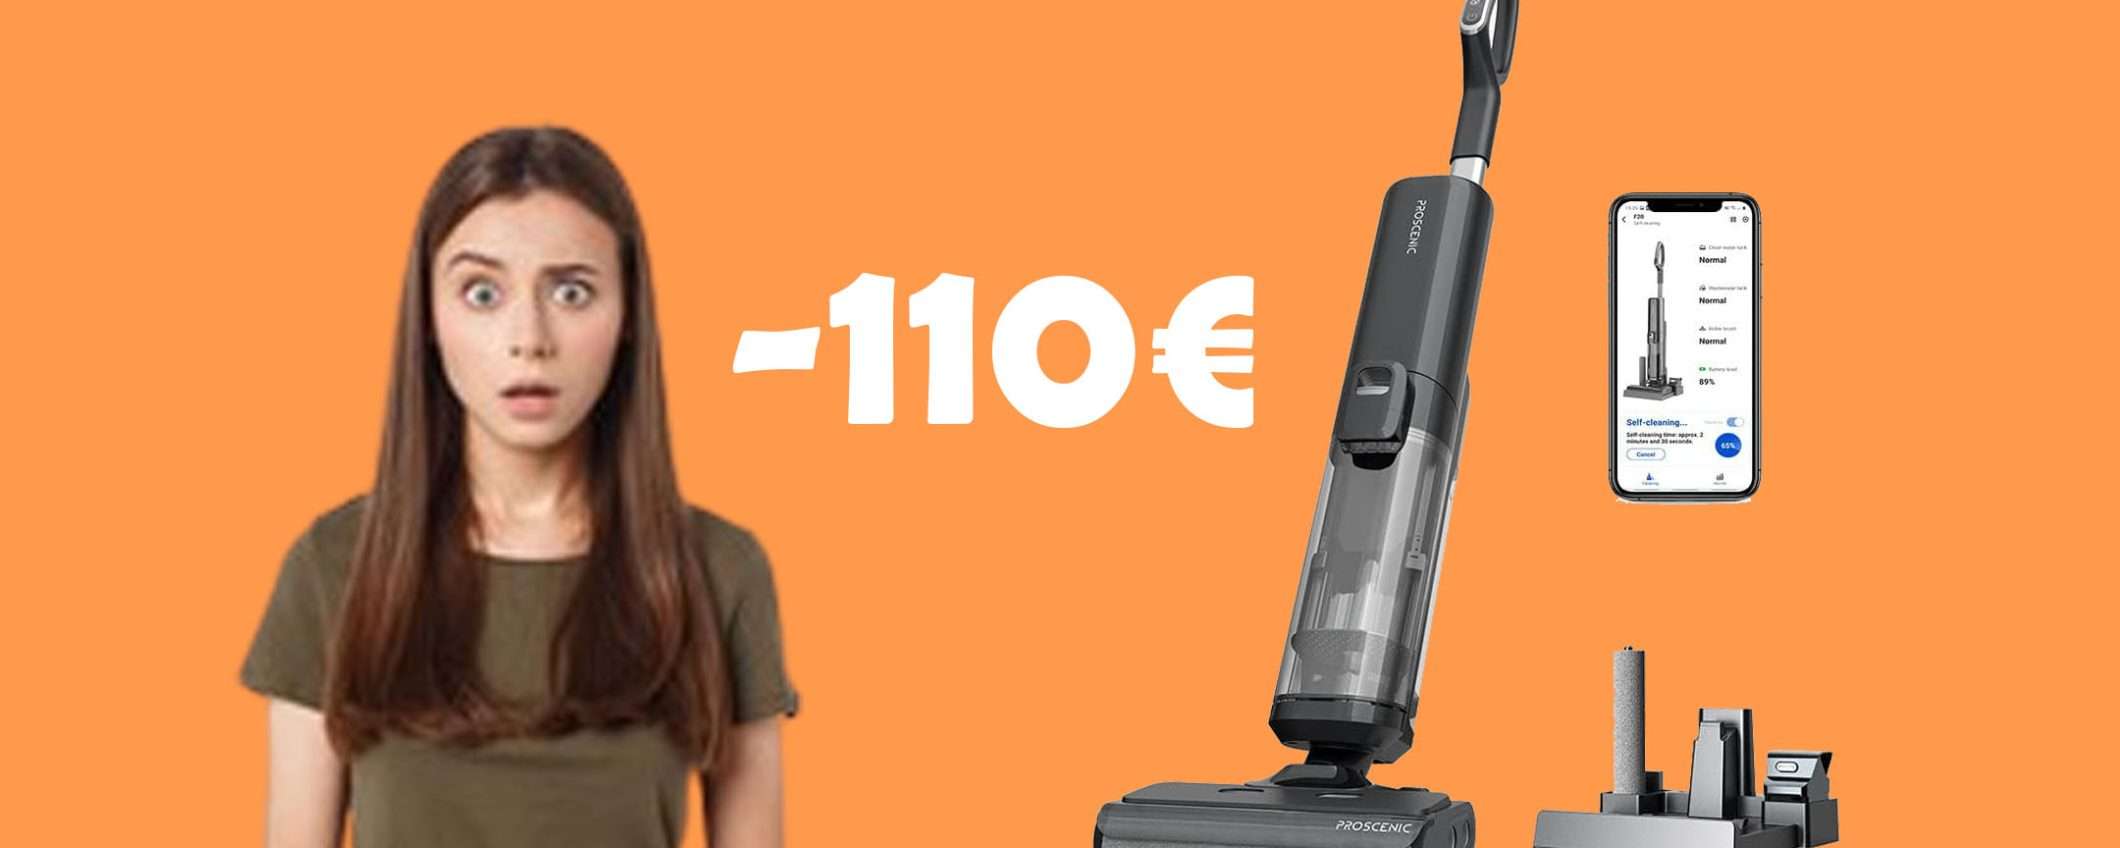 Aspirapolvere 3 in 1 senza fili Proscenic: sconto coupon di 110€